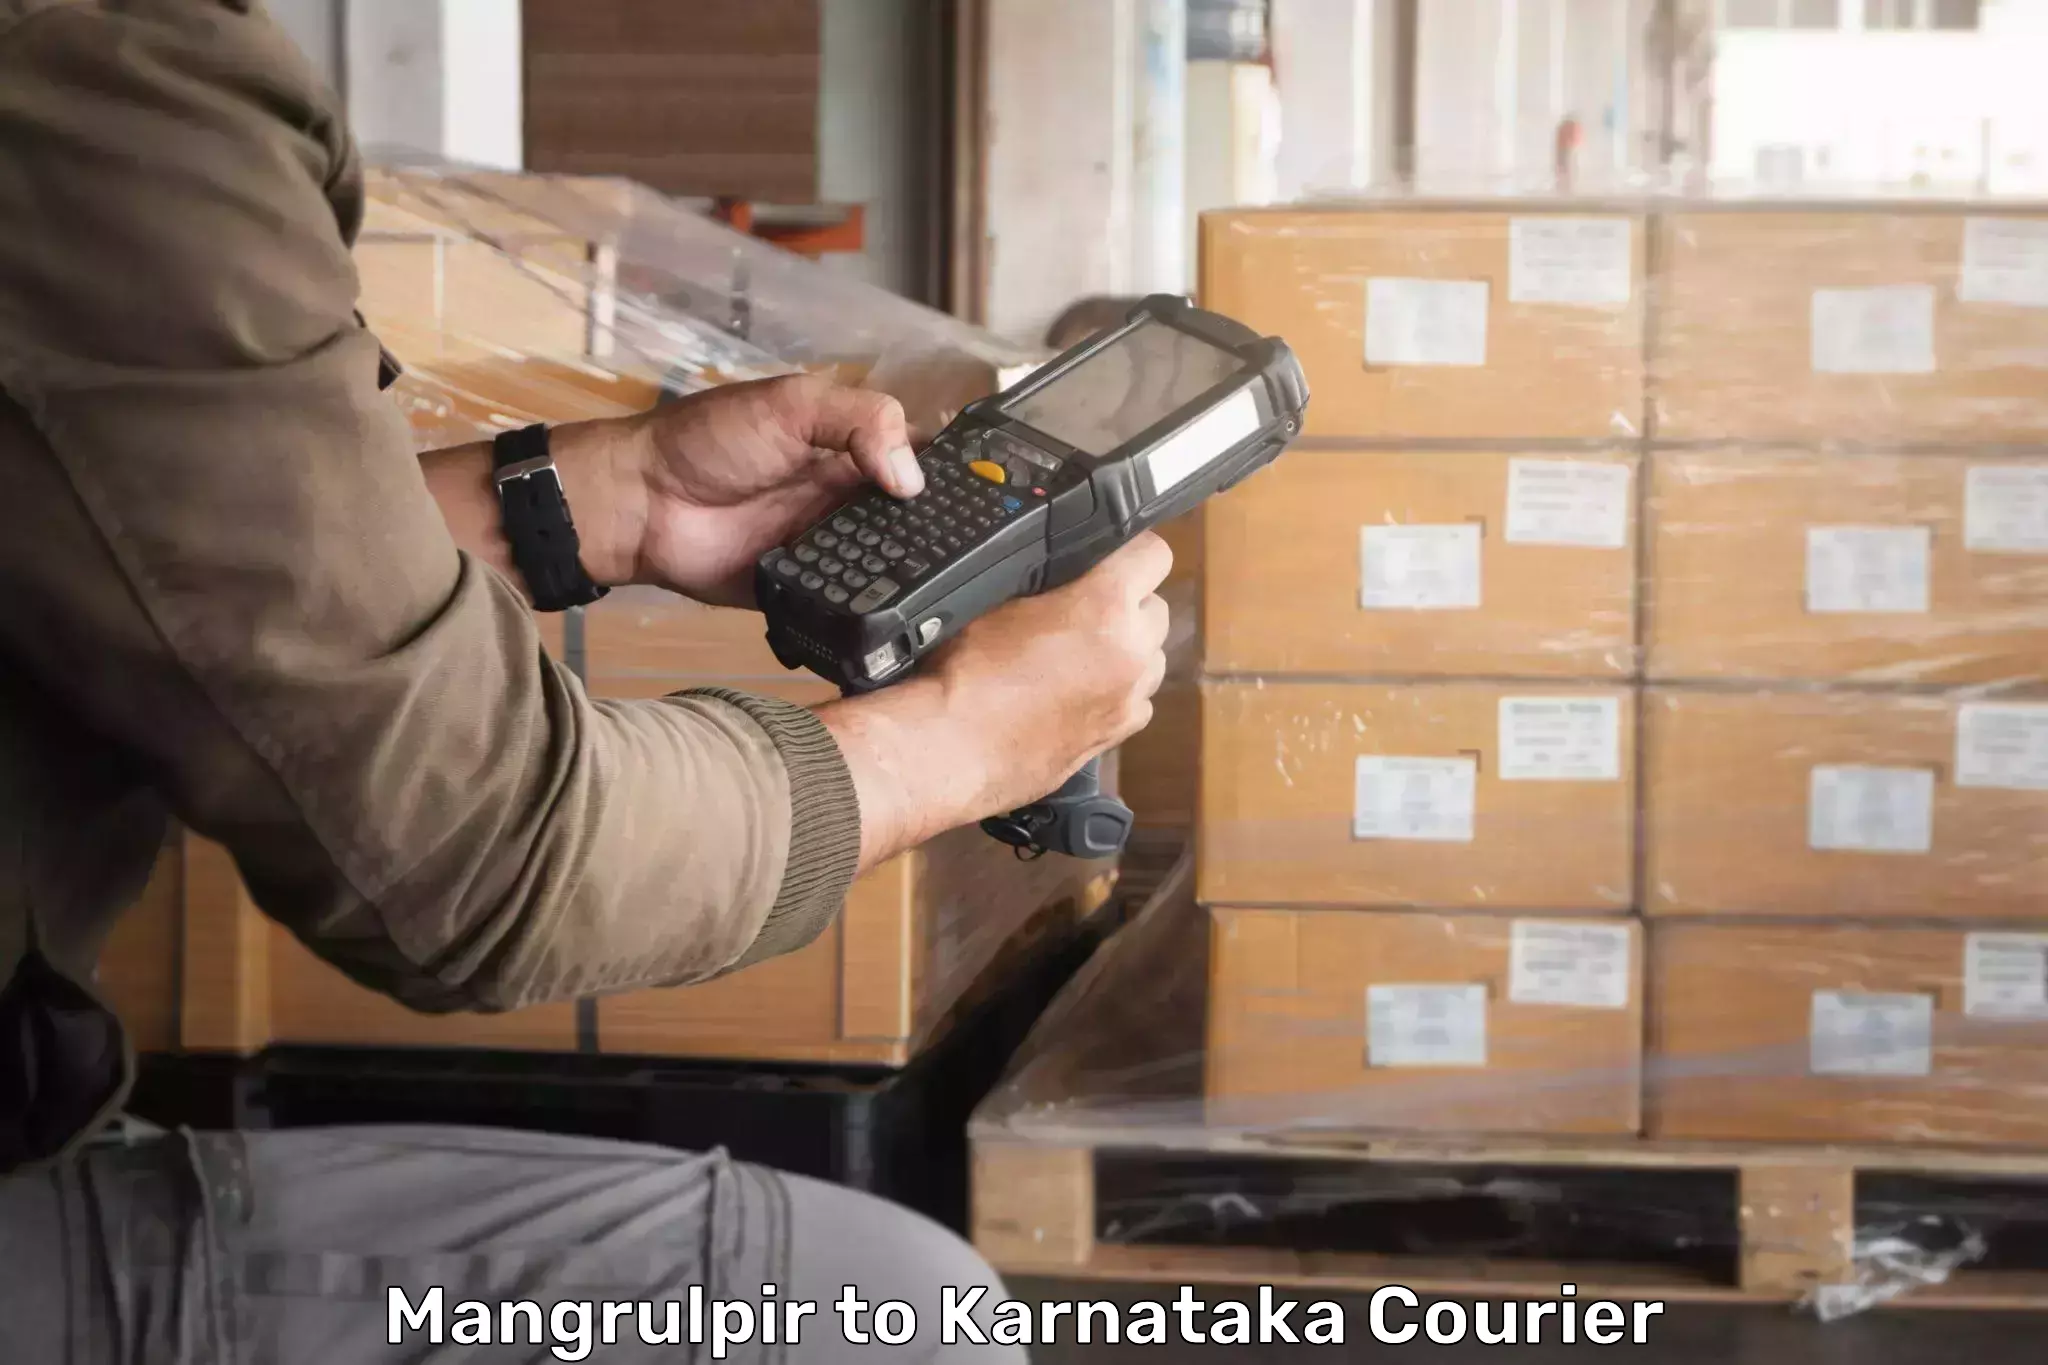 Courier service efficiency Mangrulpir to Mudigere